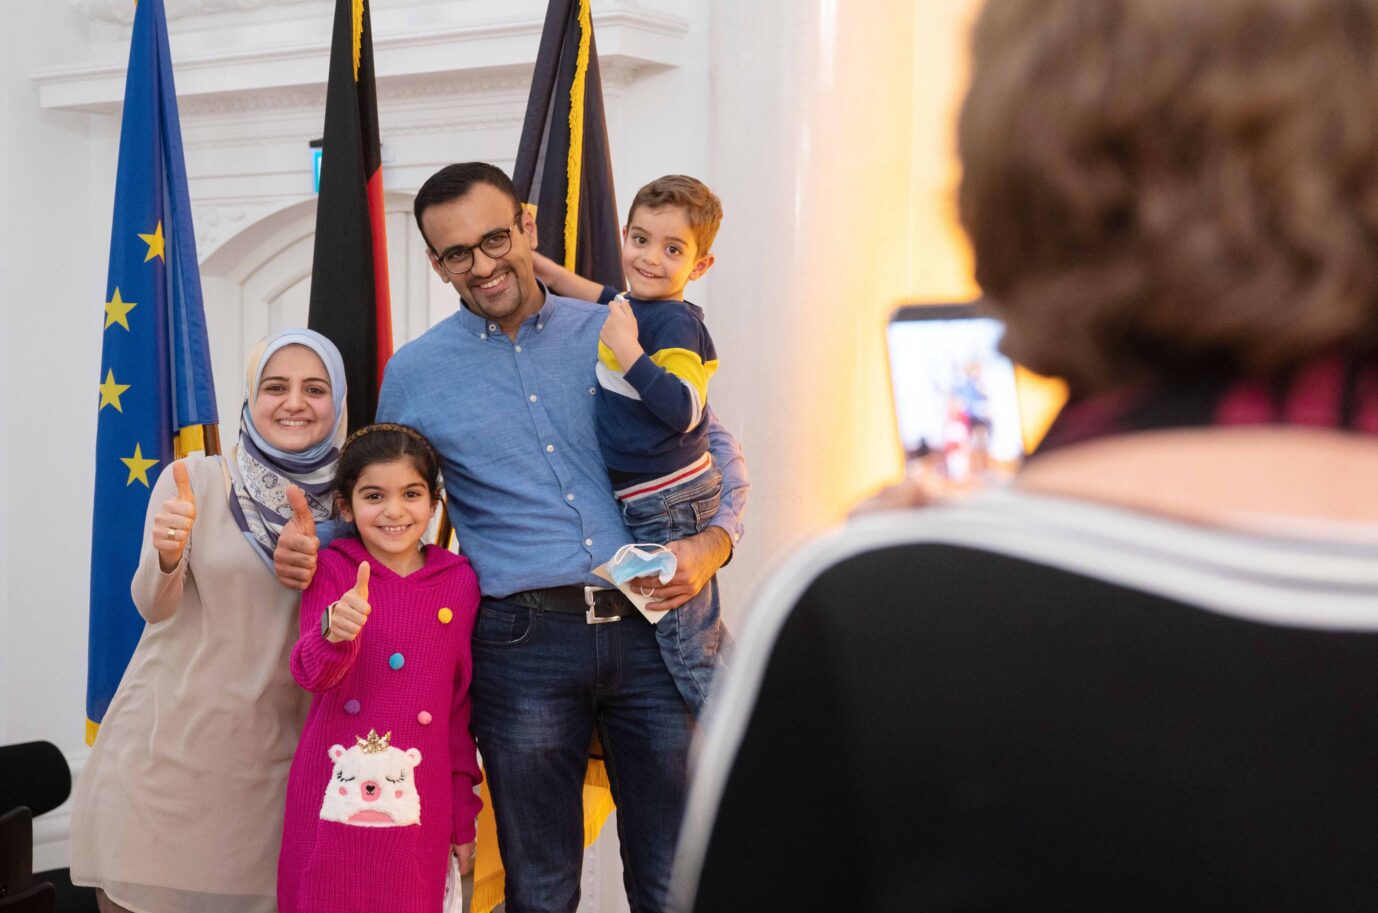 Eine Familie aus dem Irak nach einer Einbürgerungsfeier Foto: picture alliance/dpa | Marijan Murat